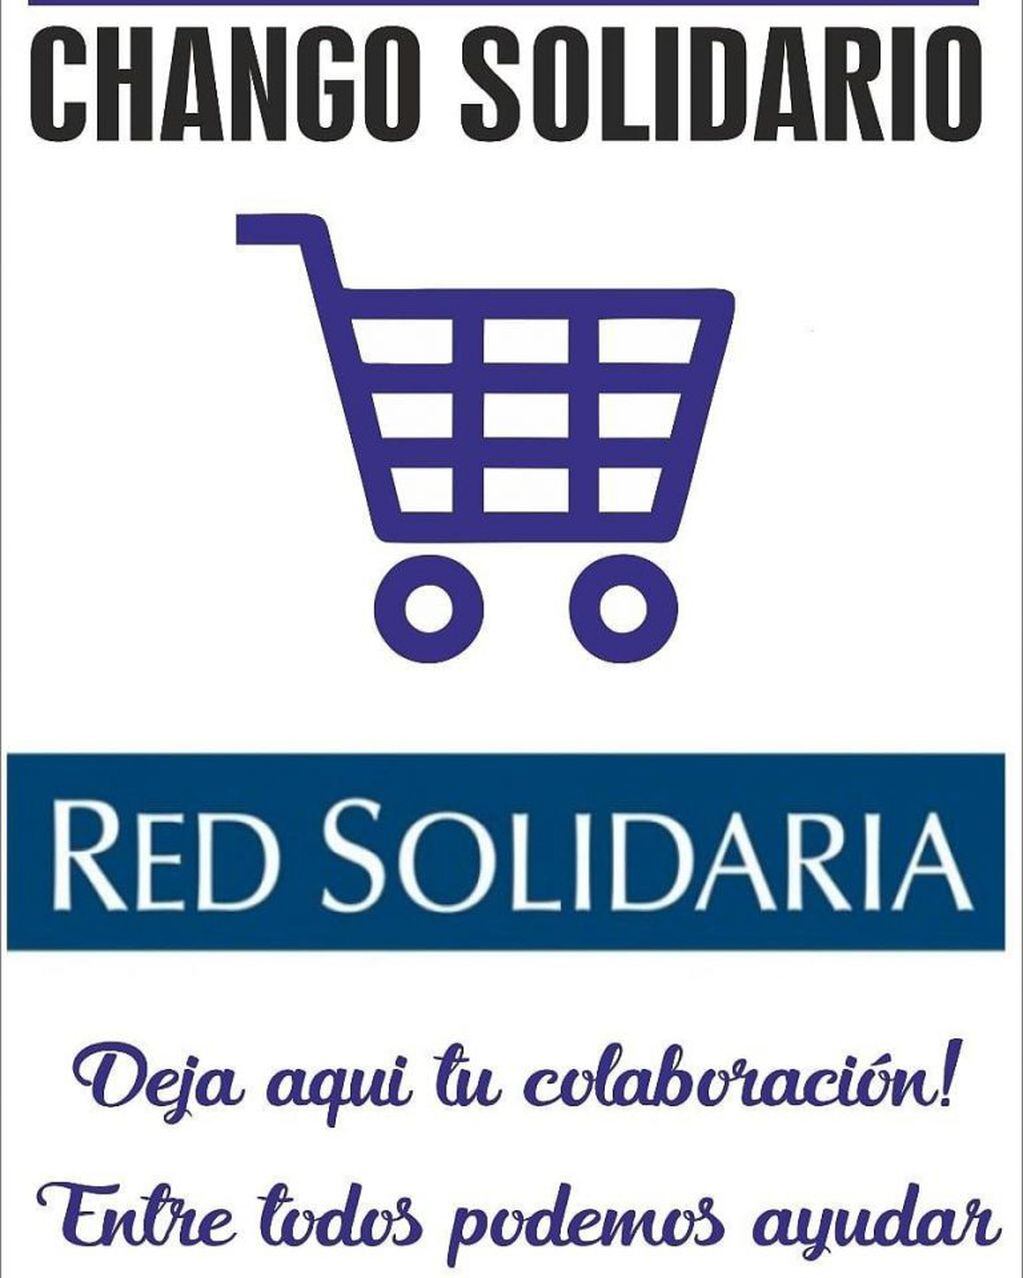 Chango Solidario - Red Solidaria San Francisco